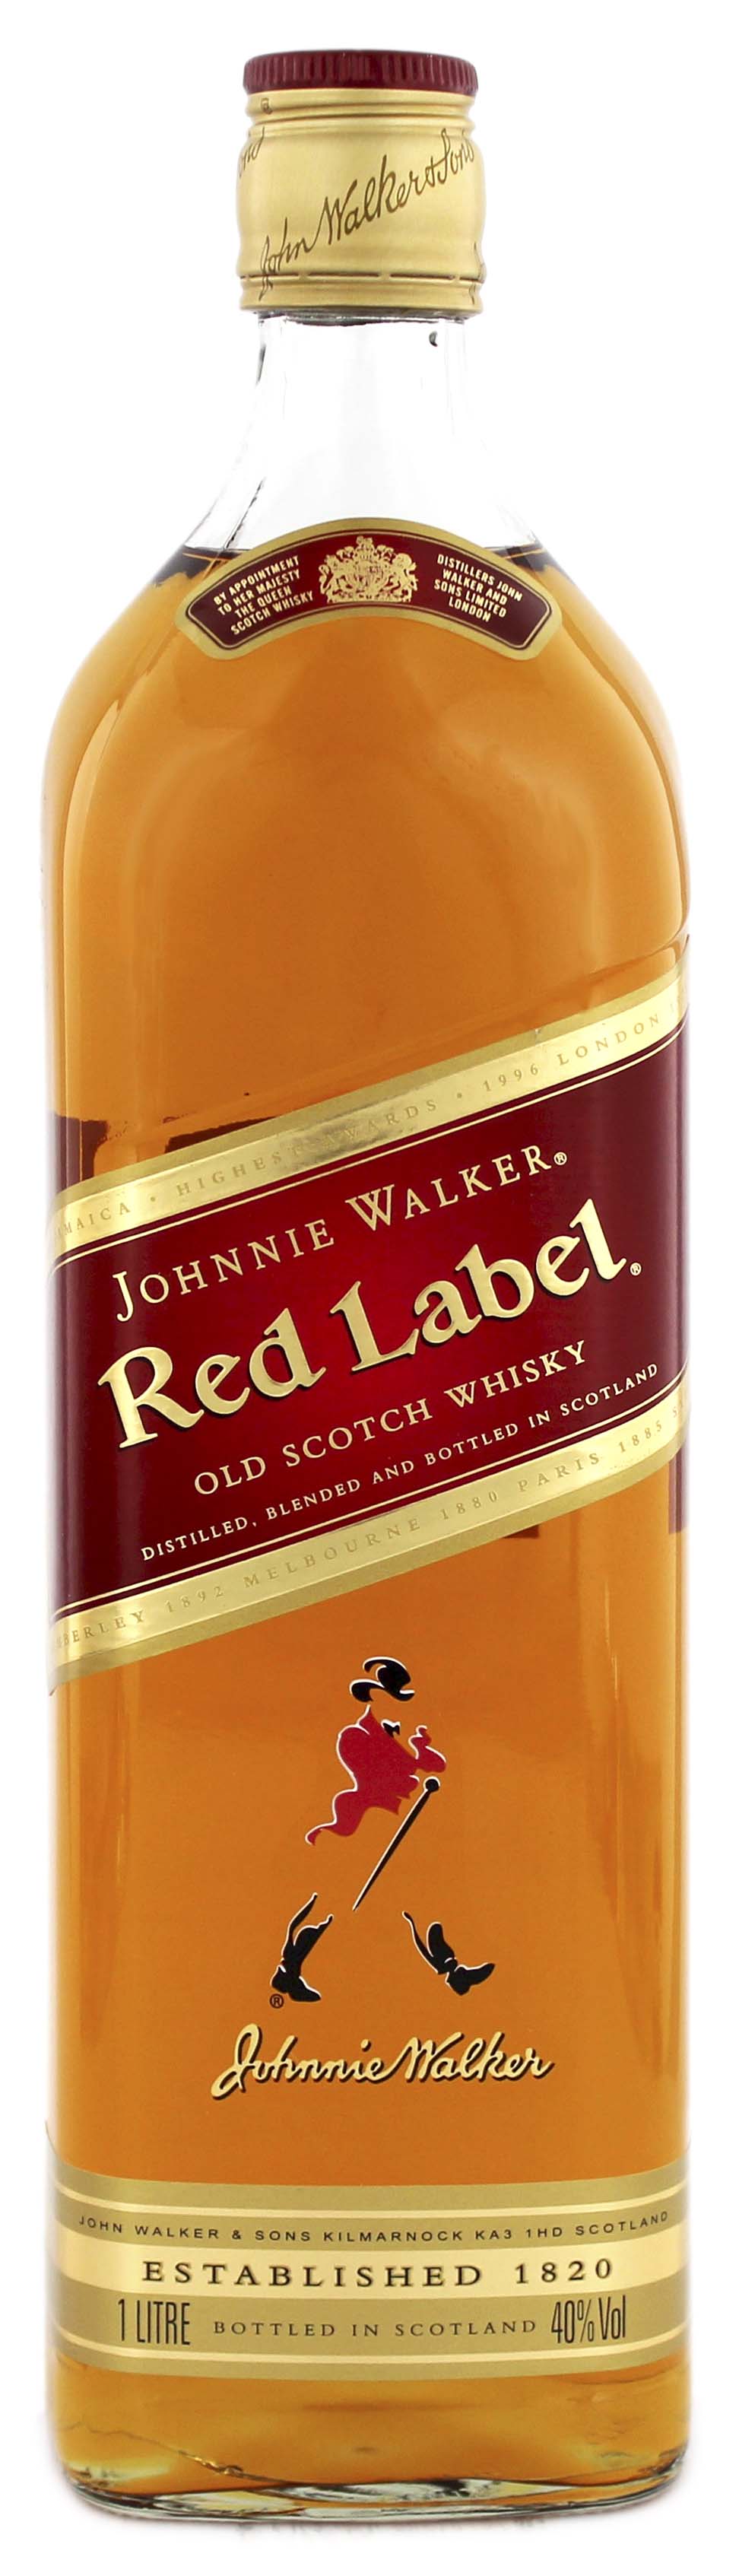 kaufen Shop Scotch im Johnnie Red Whisky Online Whisky Walker Label